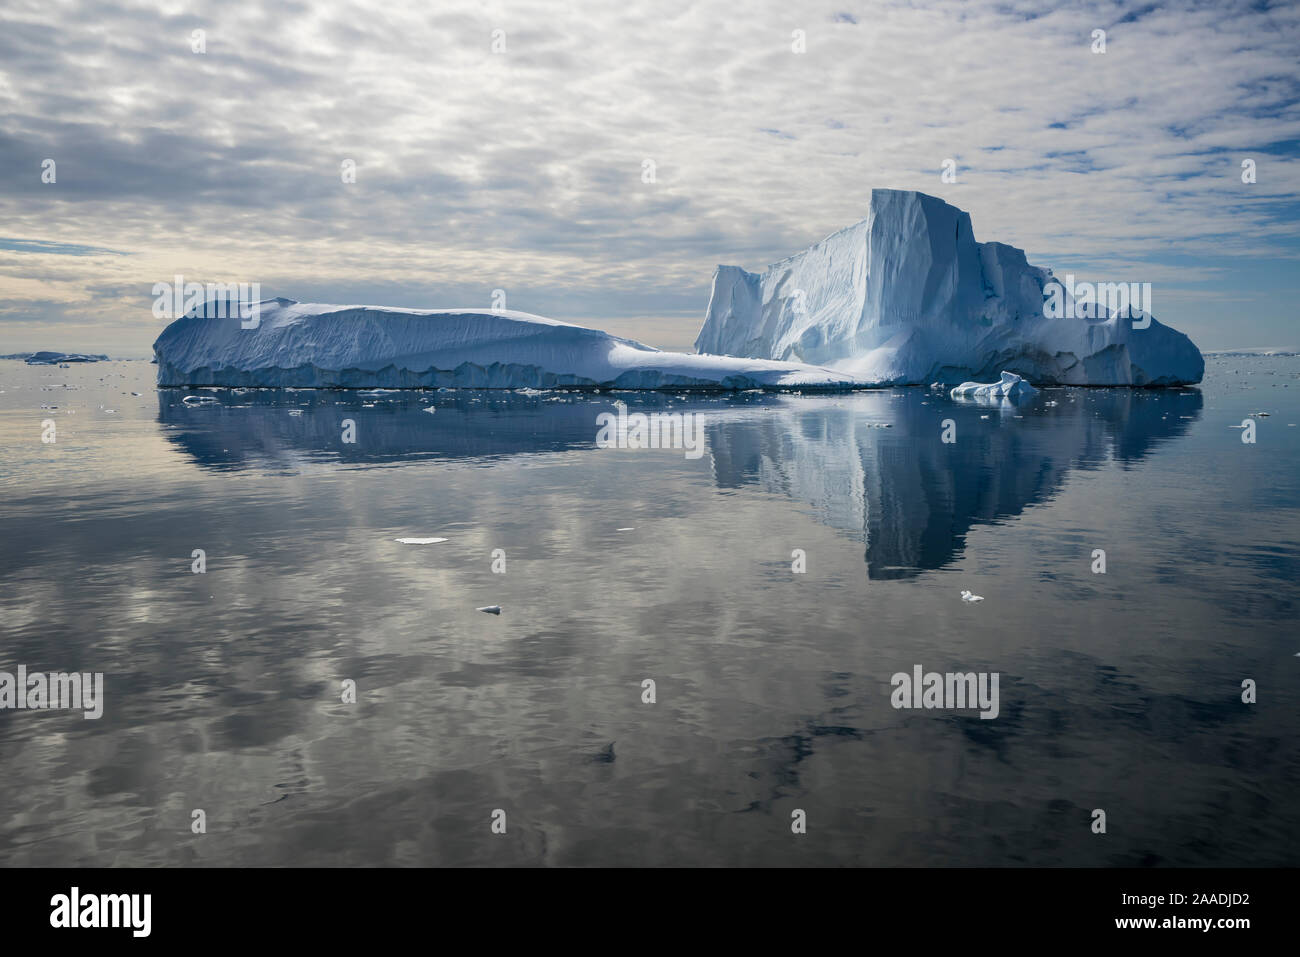 Eisberg spiegelt sich im stillen Wasser der Crystal Sound, in der Nähe von Detaille Island, Antarktische Halbinsel, Antarktis, Januar 2017. Für die Süßwasser-Projekt fotografiert. Stockfoto